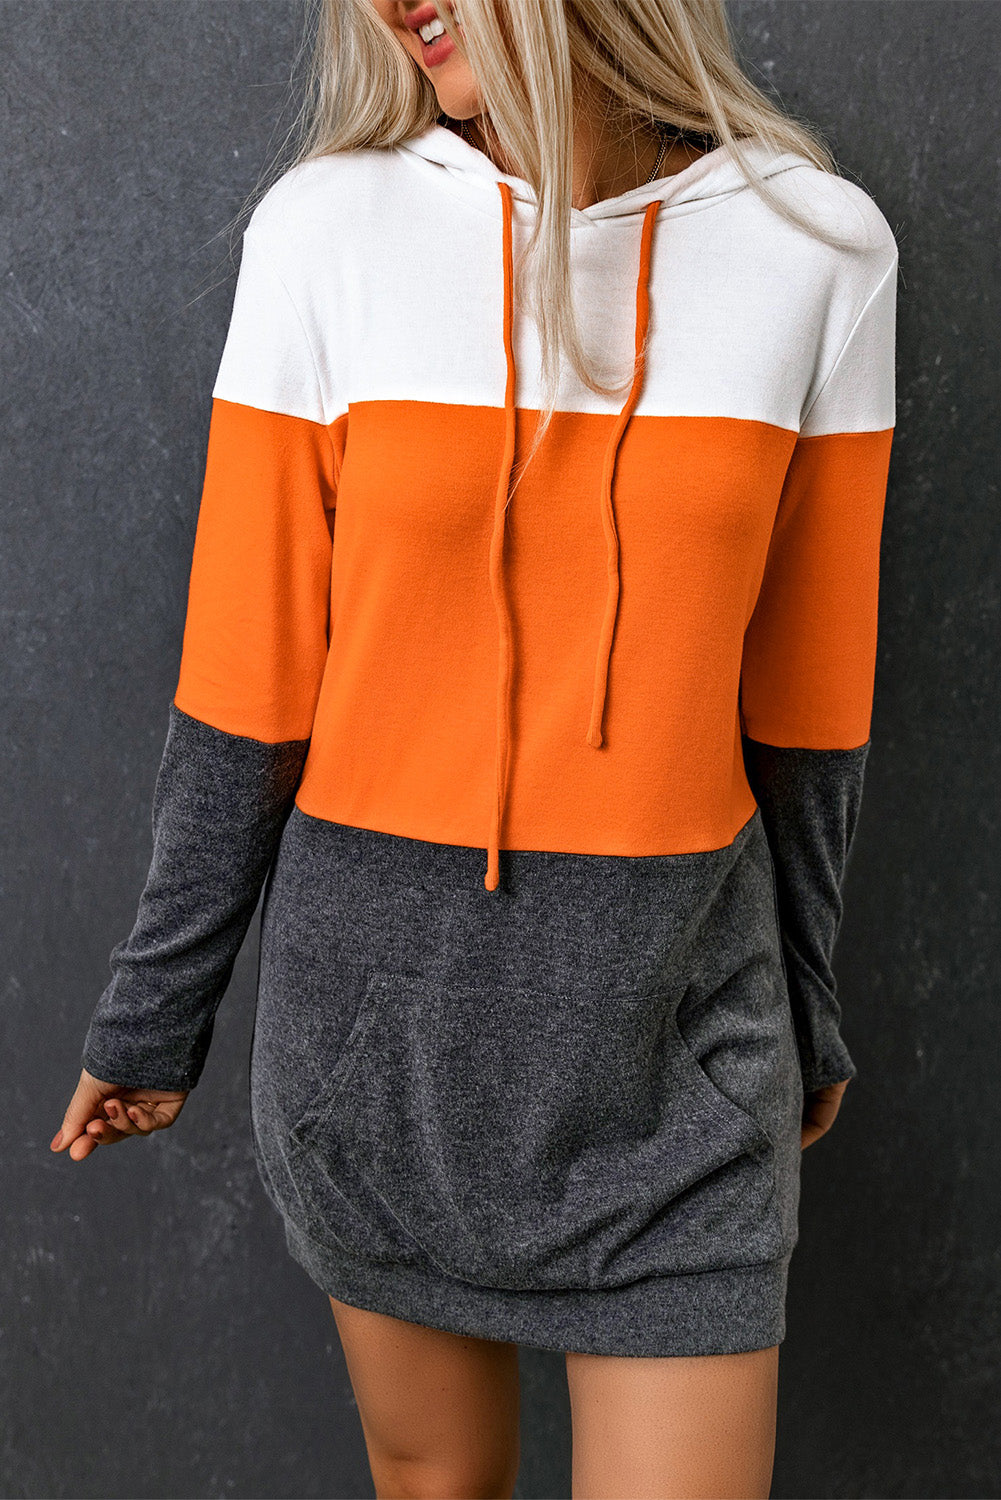 Dress Hooded - Gray Colorblock Sunny Pocket Angela Kangaroo